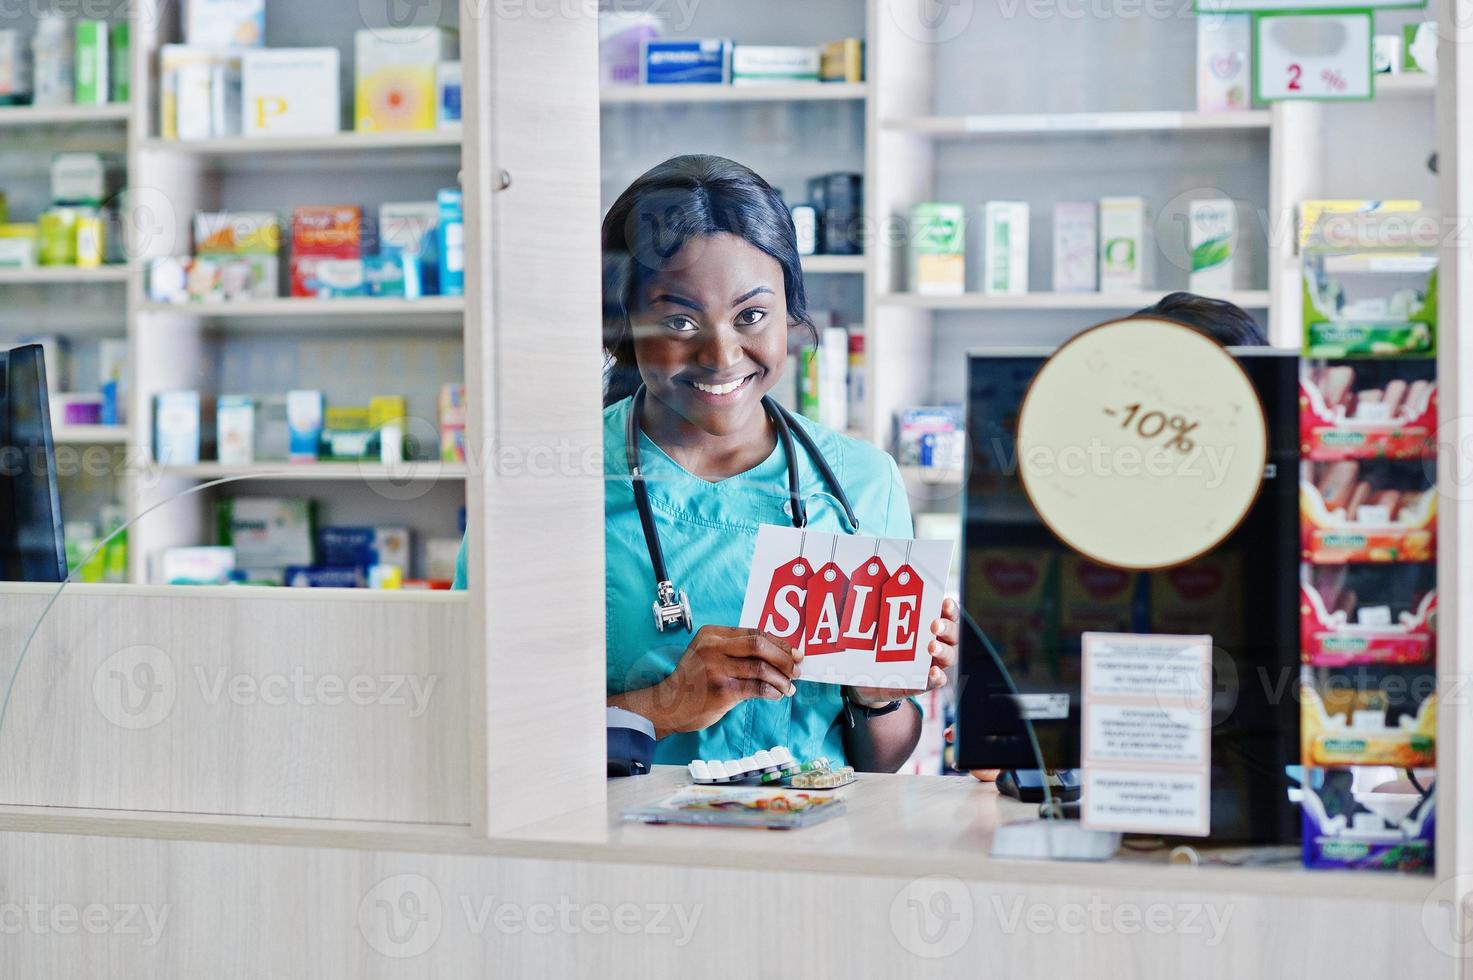 deux pharmaciens afro-américains travaillant dans une pharmacie à la pharmacie hospitalière. soins de santé africains. caissier tenant la vente. photo